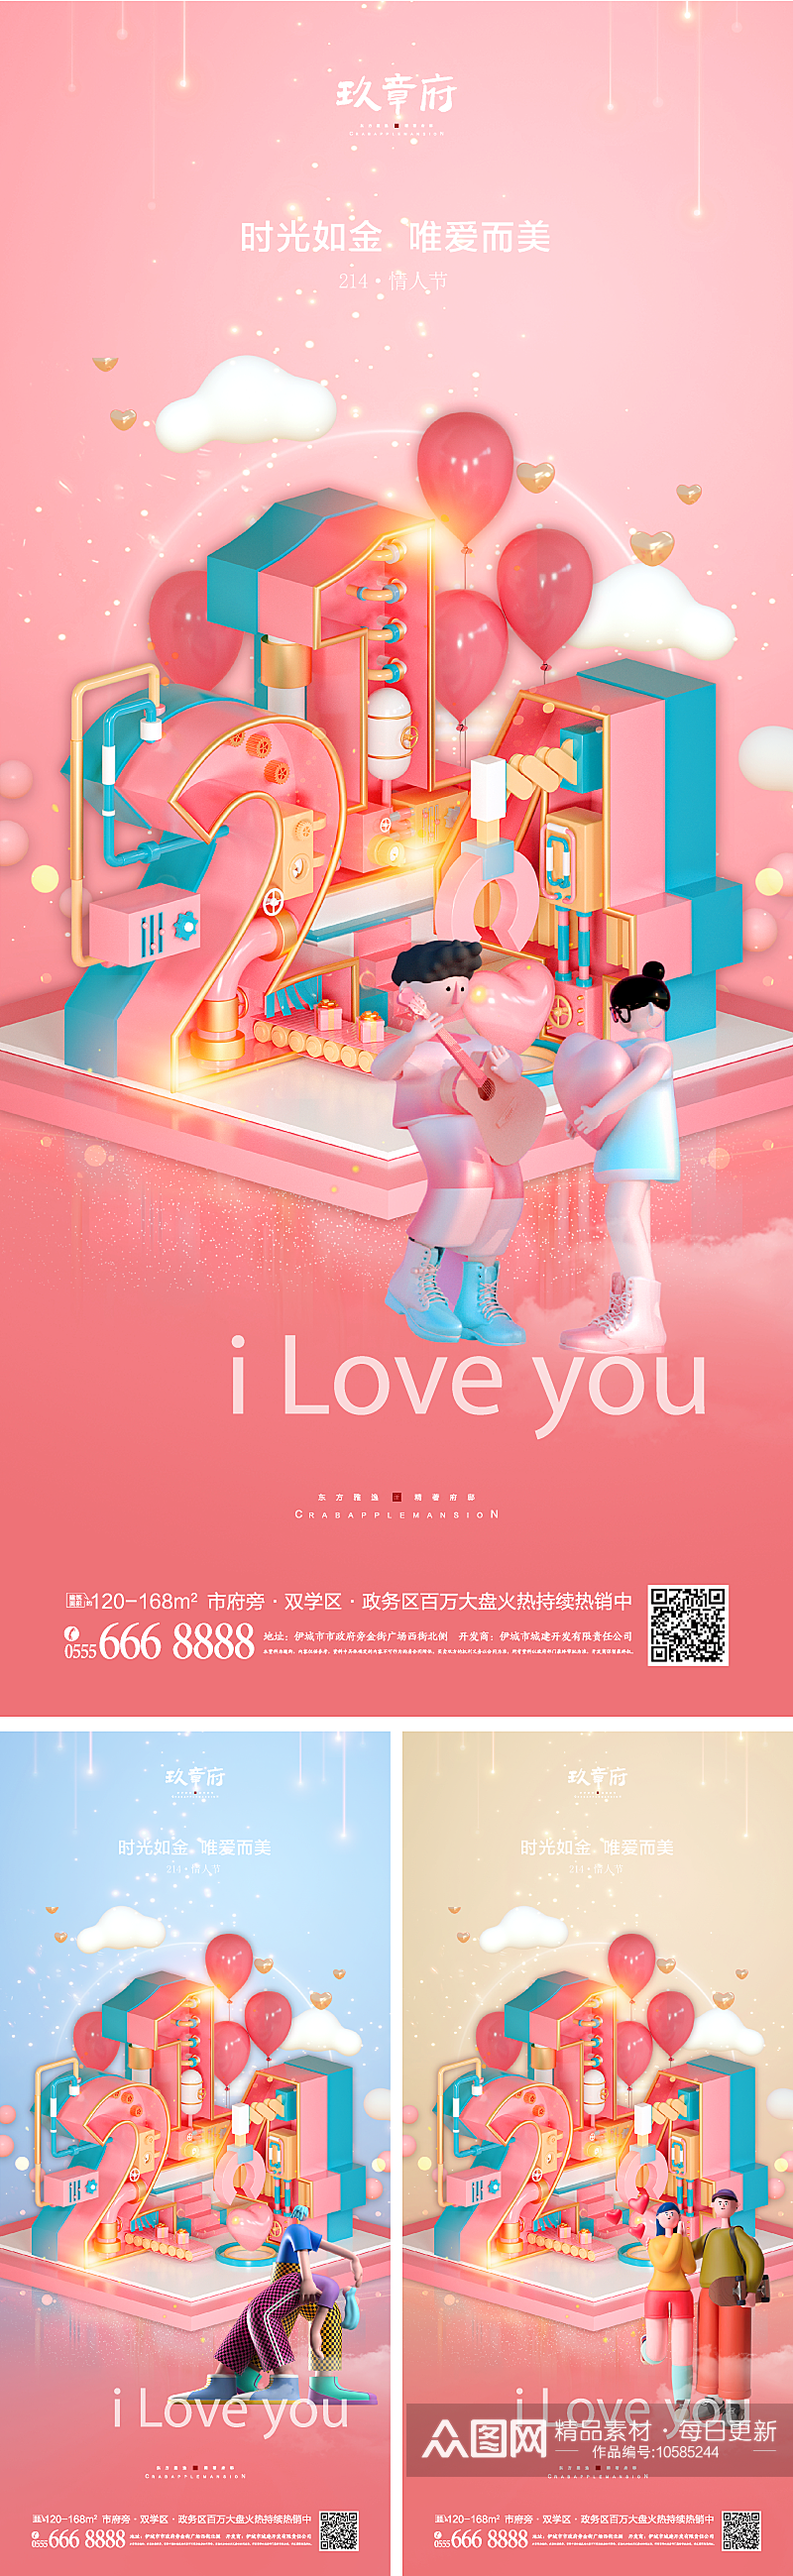 情人节宣传海报模版素材